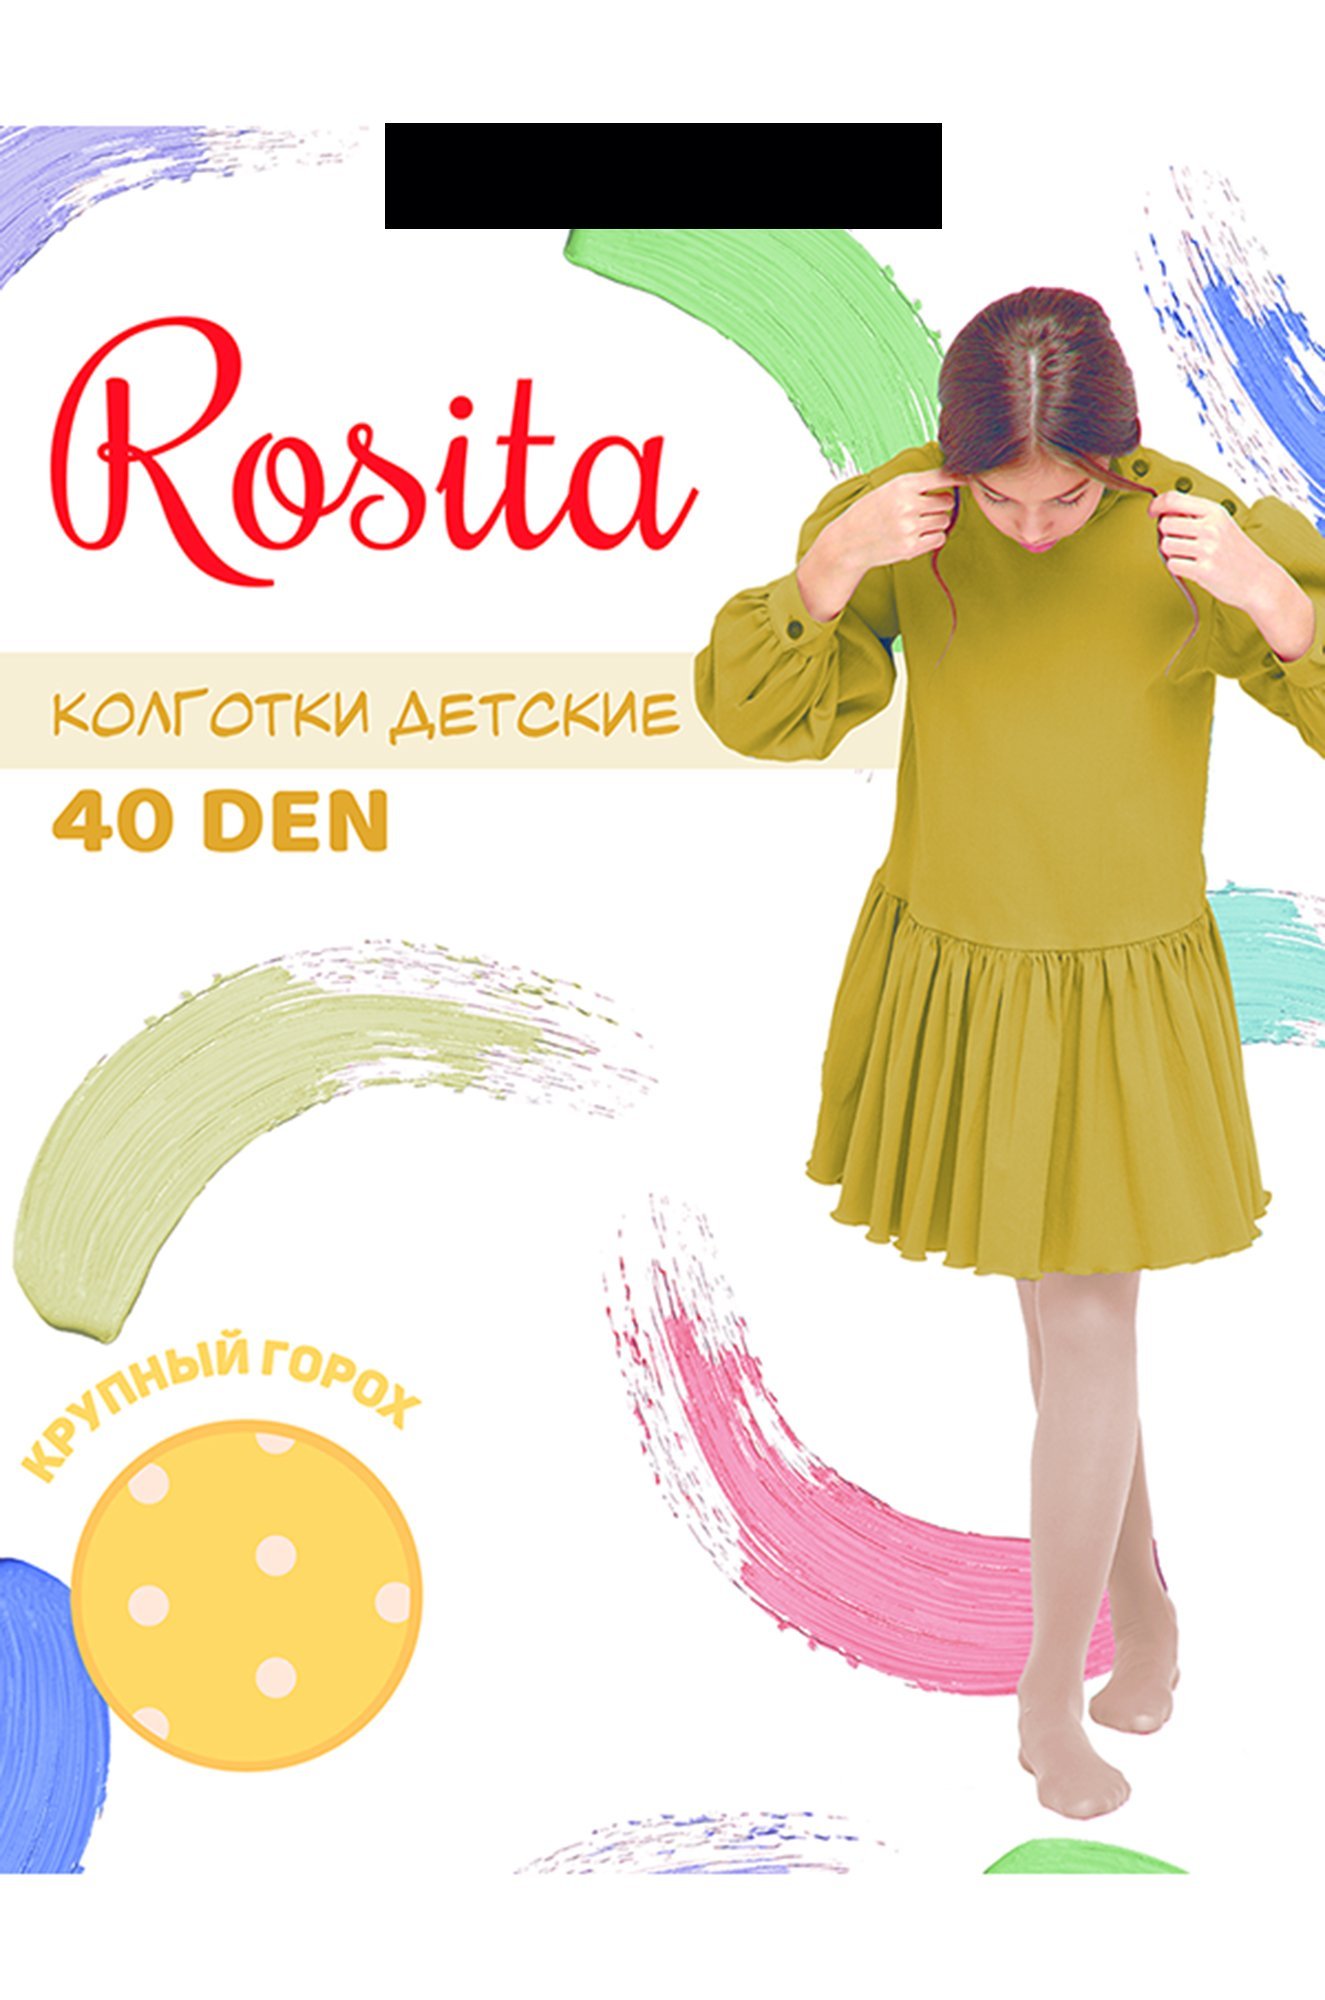 Матовые капроновые колготки для девочки с рисунком 40 Den Rosita